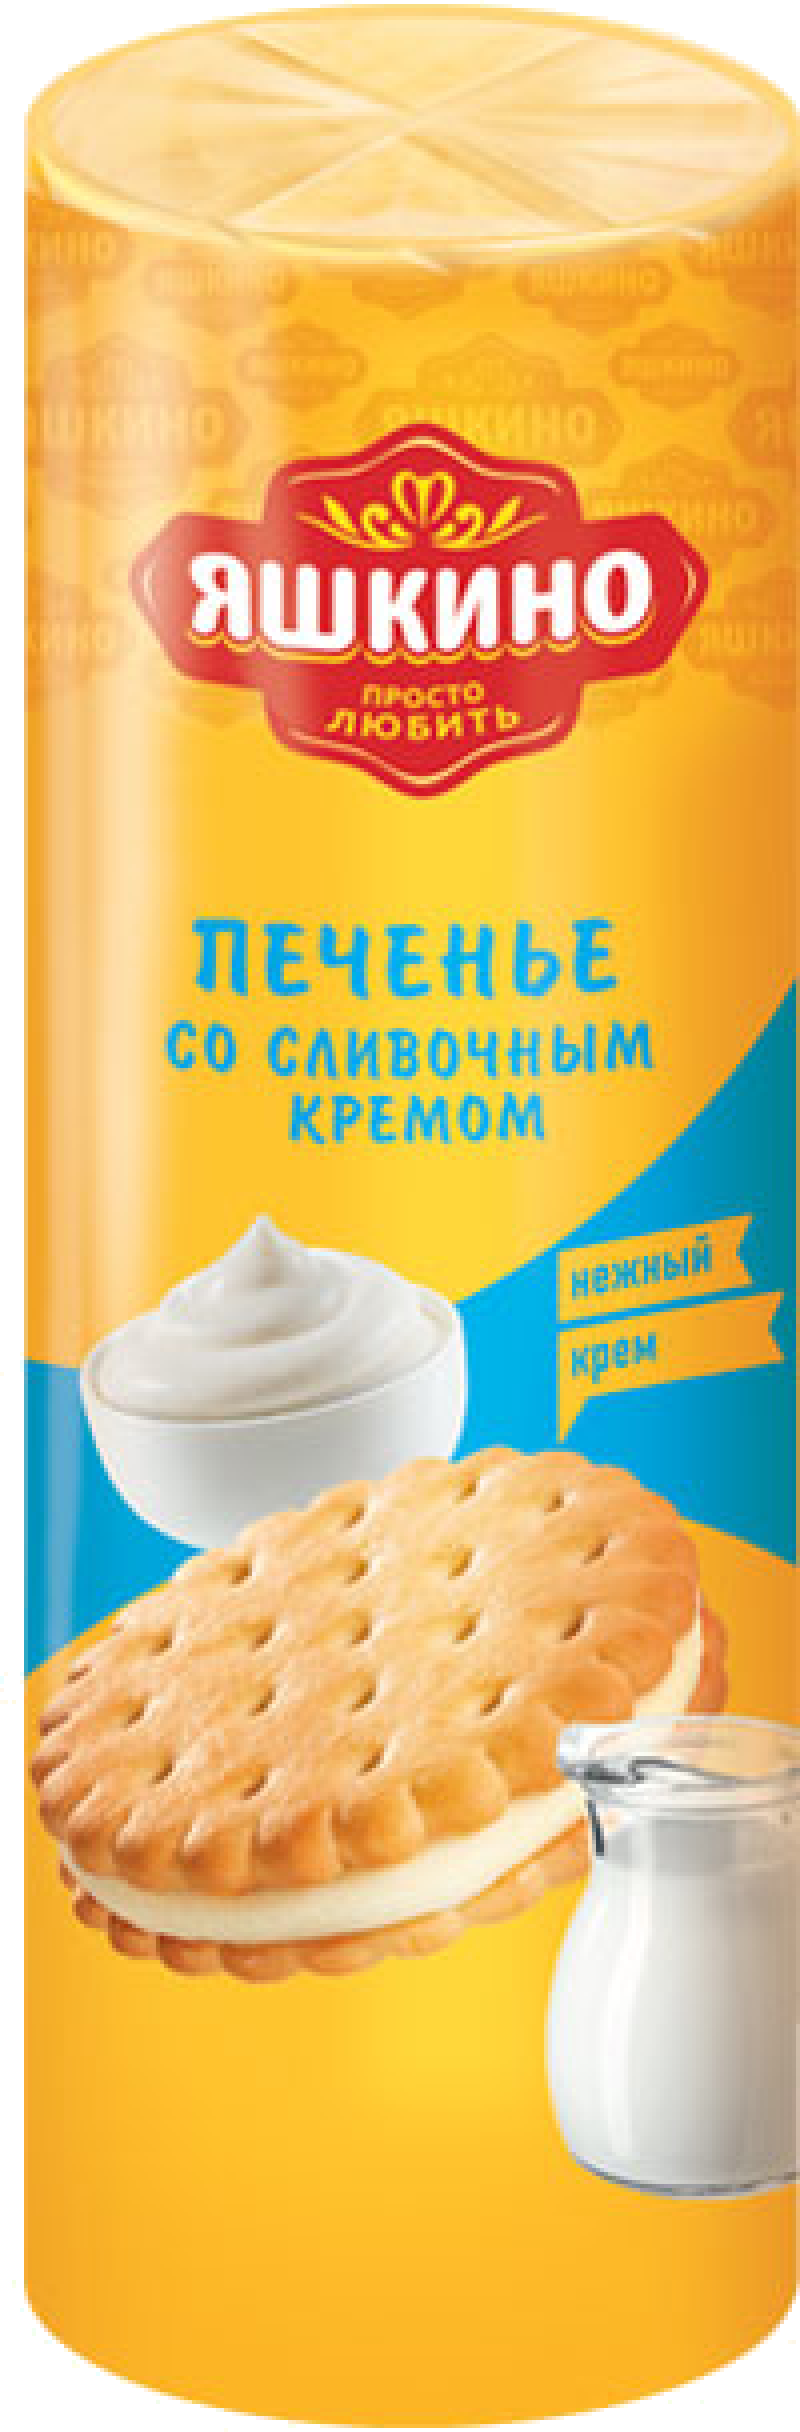 Печенье ТМ Яшкино со сливочным кремом 182г